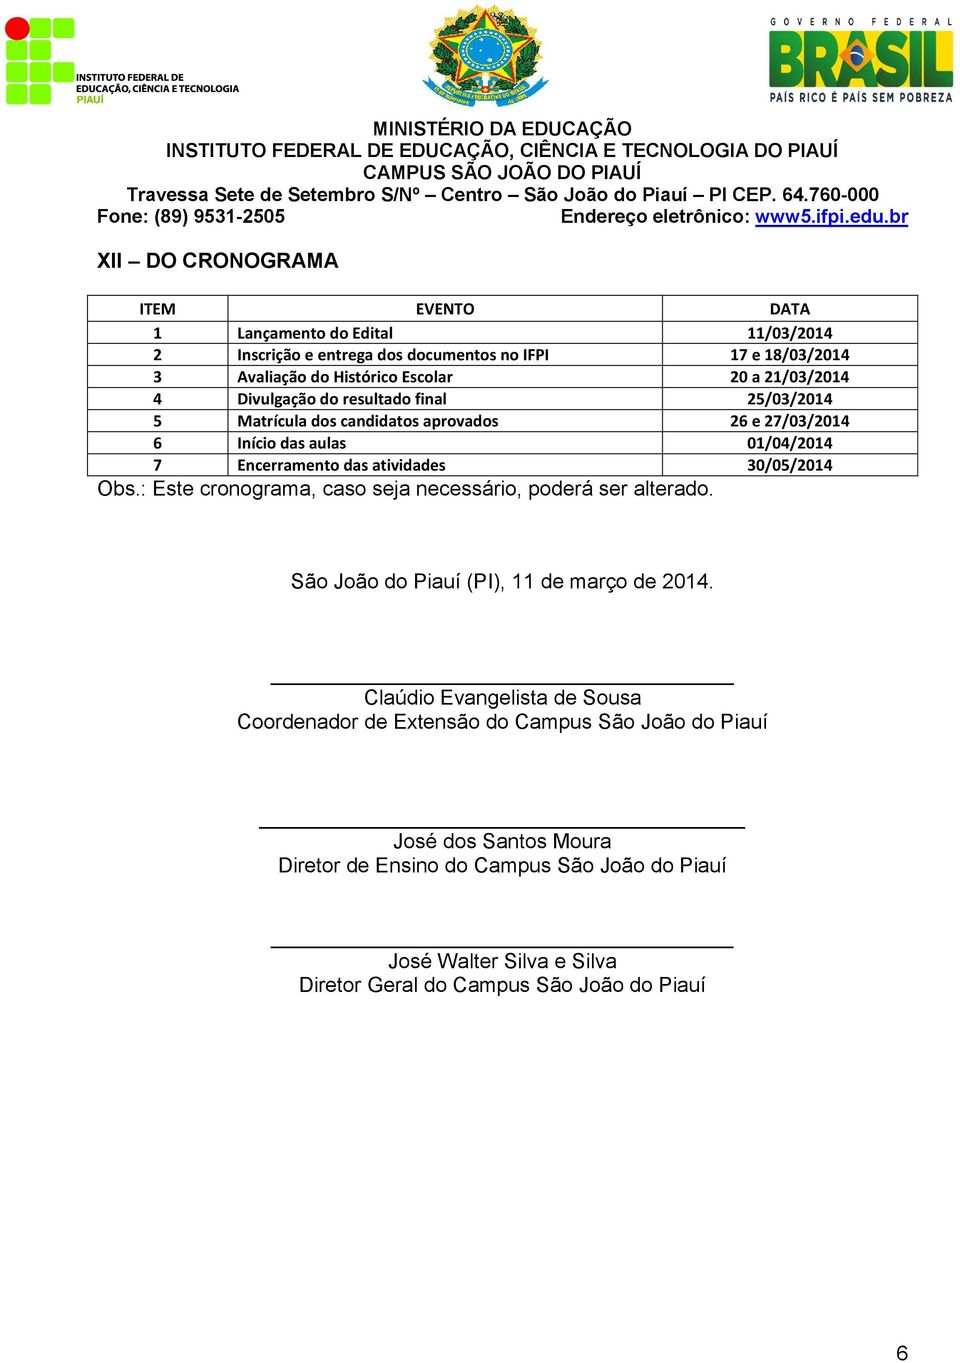 30/05/2014 Obs.: Este cronograma, caso seja necessário, poderá ser alterado. São João do Piauí (PI), 11 de março de 2014.